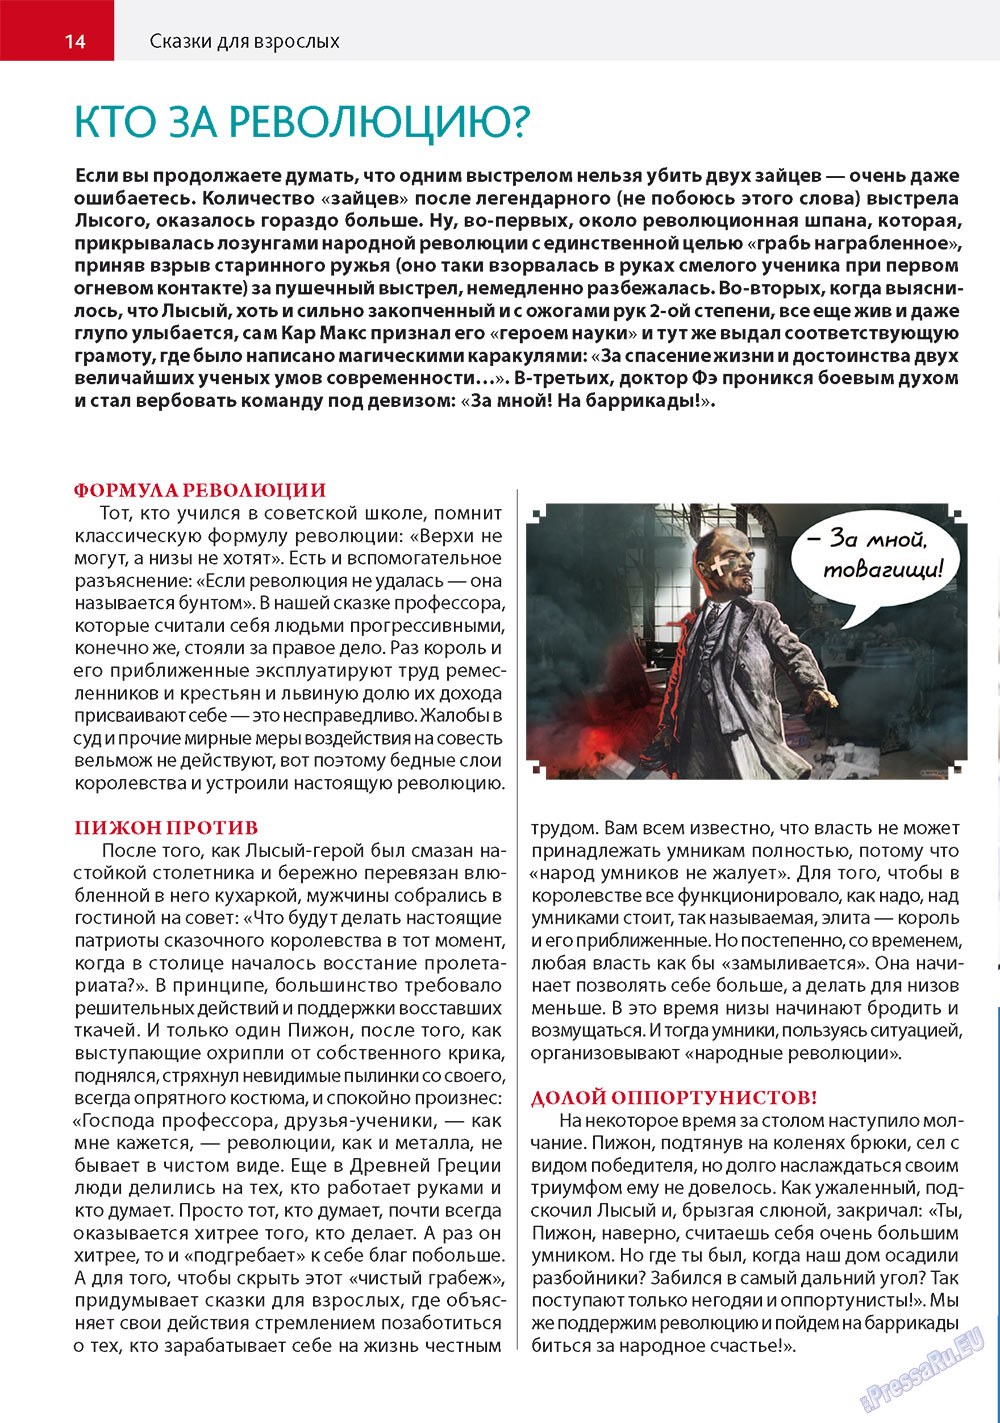 Афиша Augsburg (журнал). 2011 год, номер 5, стр. 14